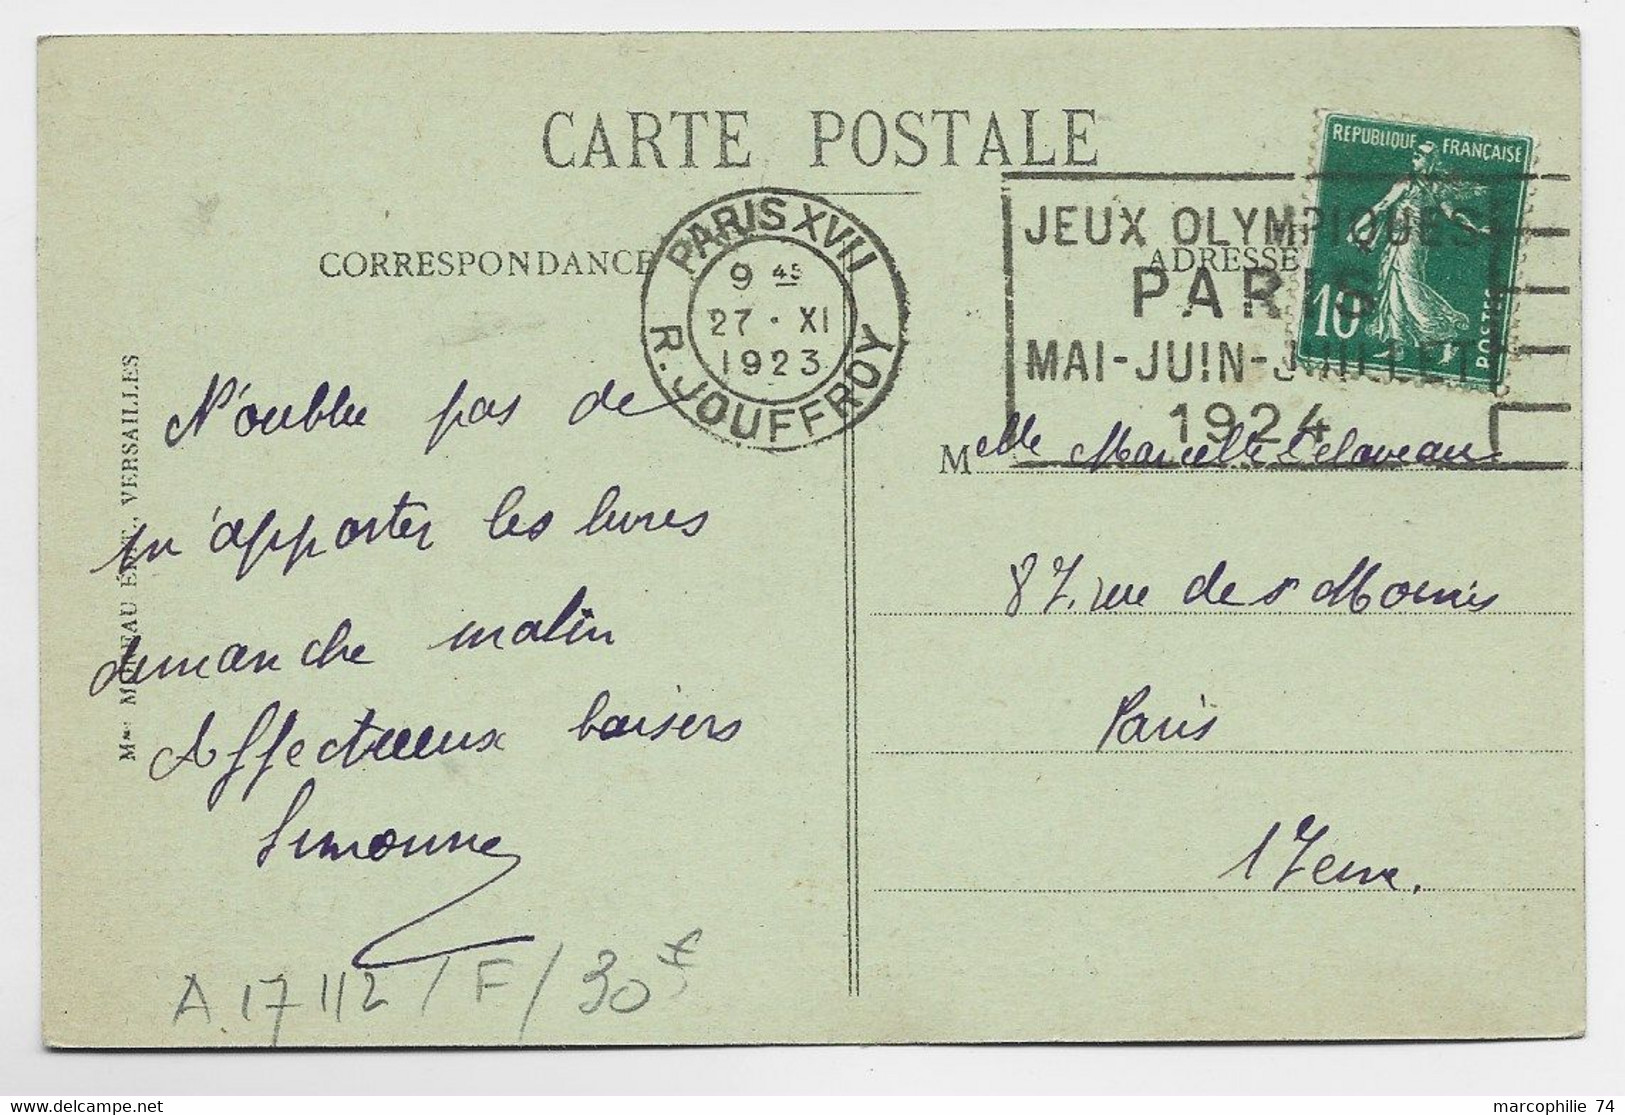 FRANCE SEMEUSE 10C CARTE MEC FLIER JEUX OLYMPIQUES PARIS R JOUFFROY 27.XI.1923 COTE 30€ - Ete 1924: Paris